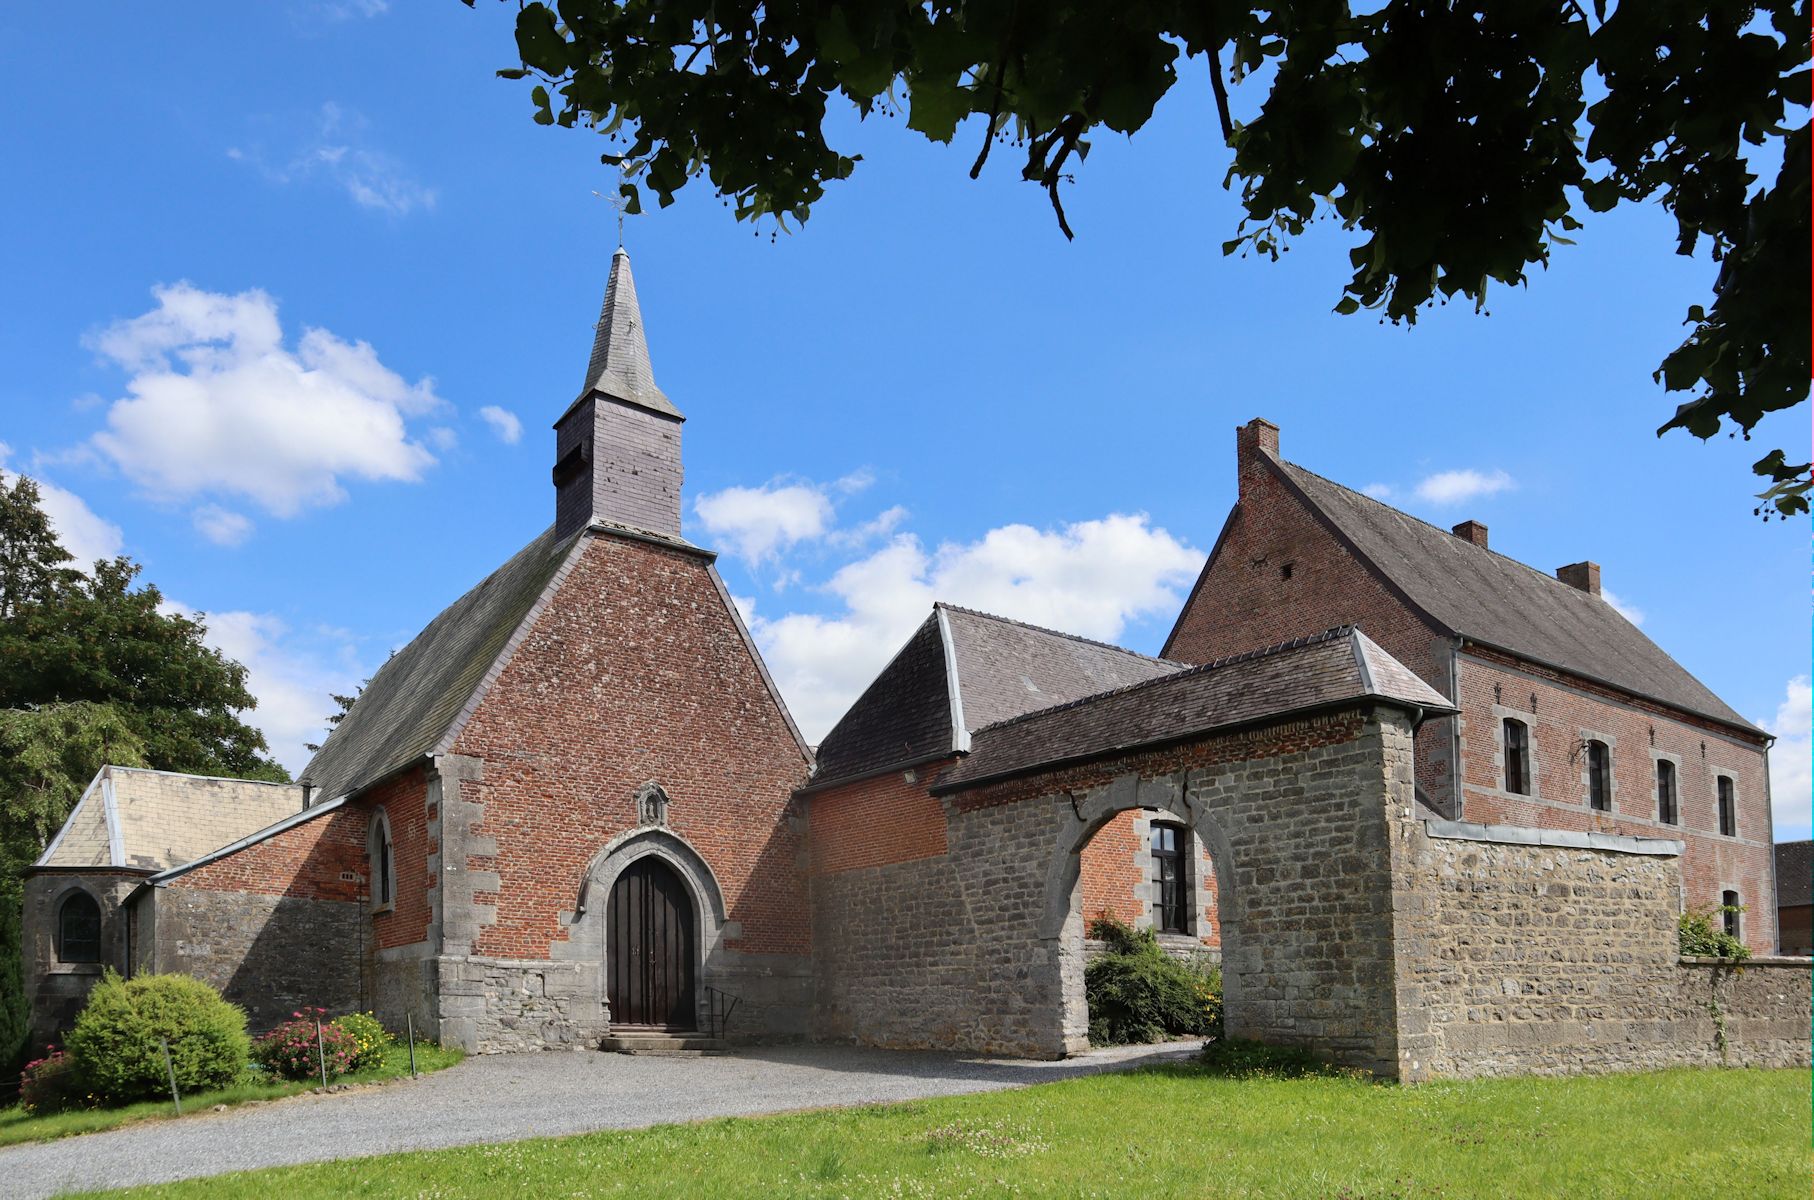 heutige Pfarrkirche St-Hilaire in Wallers-en-Fagne, heute bewohnt von Benediktinerinnen